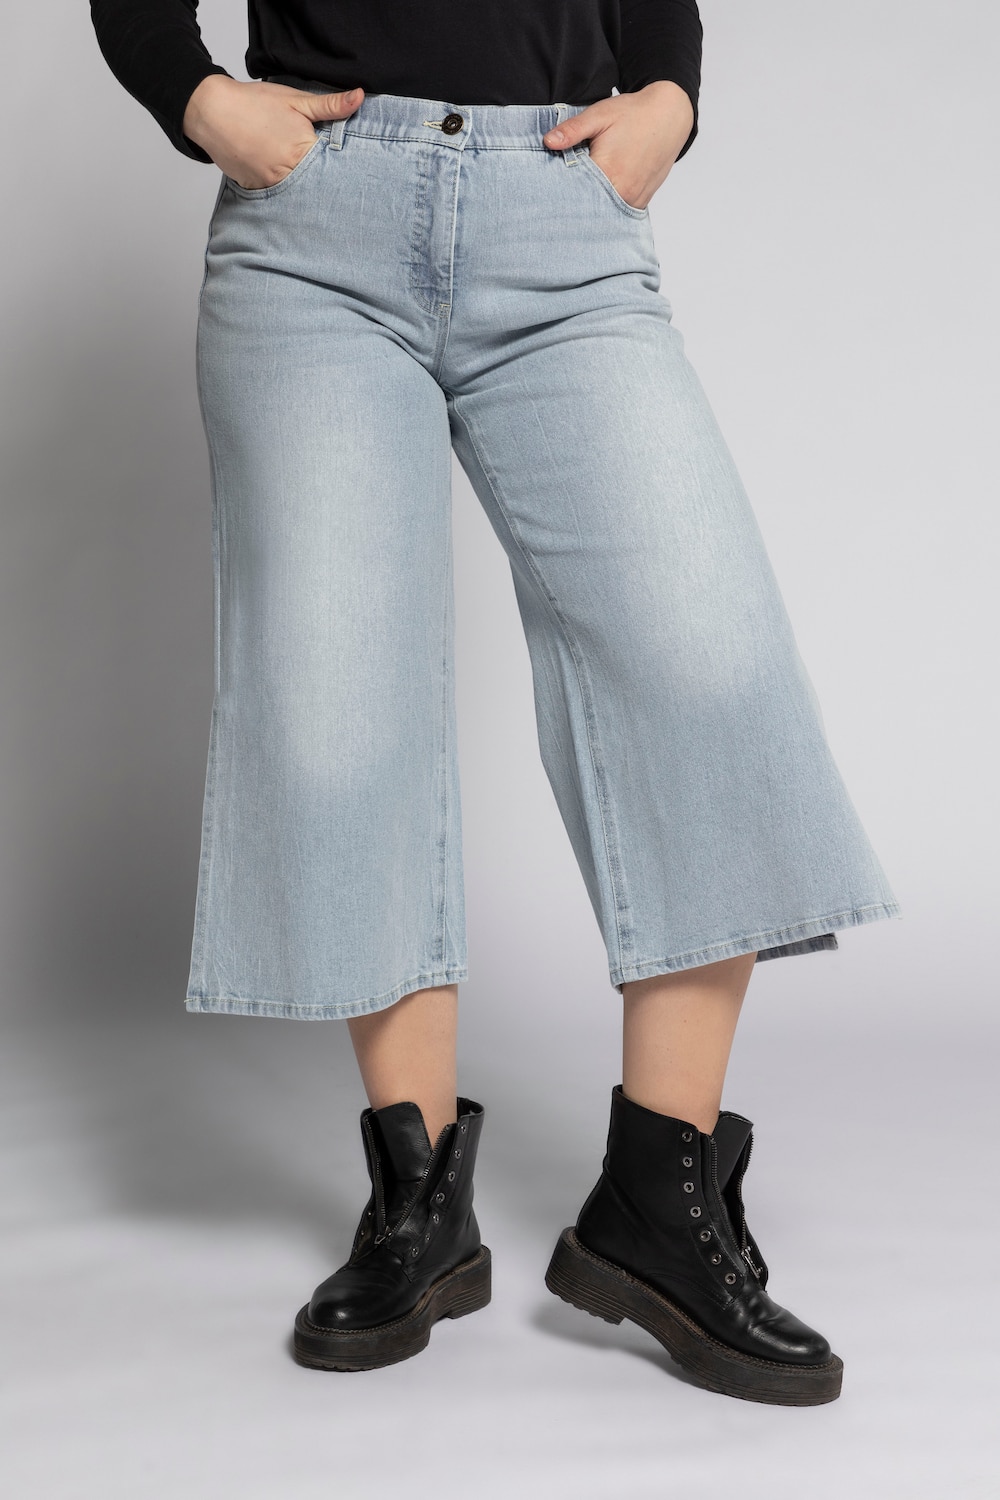 Grote Maten jeans culotte, Dames, blauw, Maat: 52, Katoen, Studio Untold